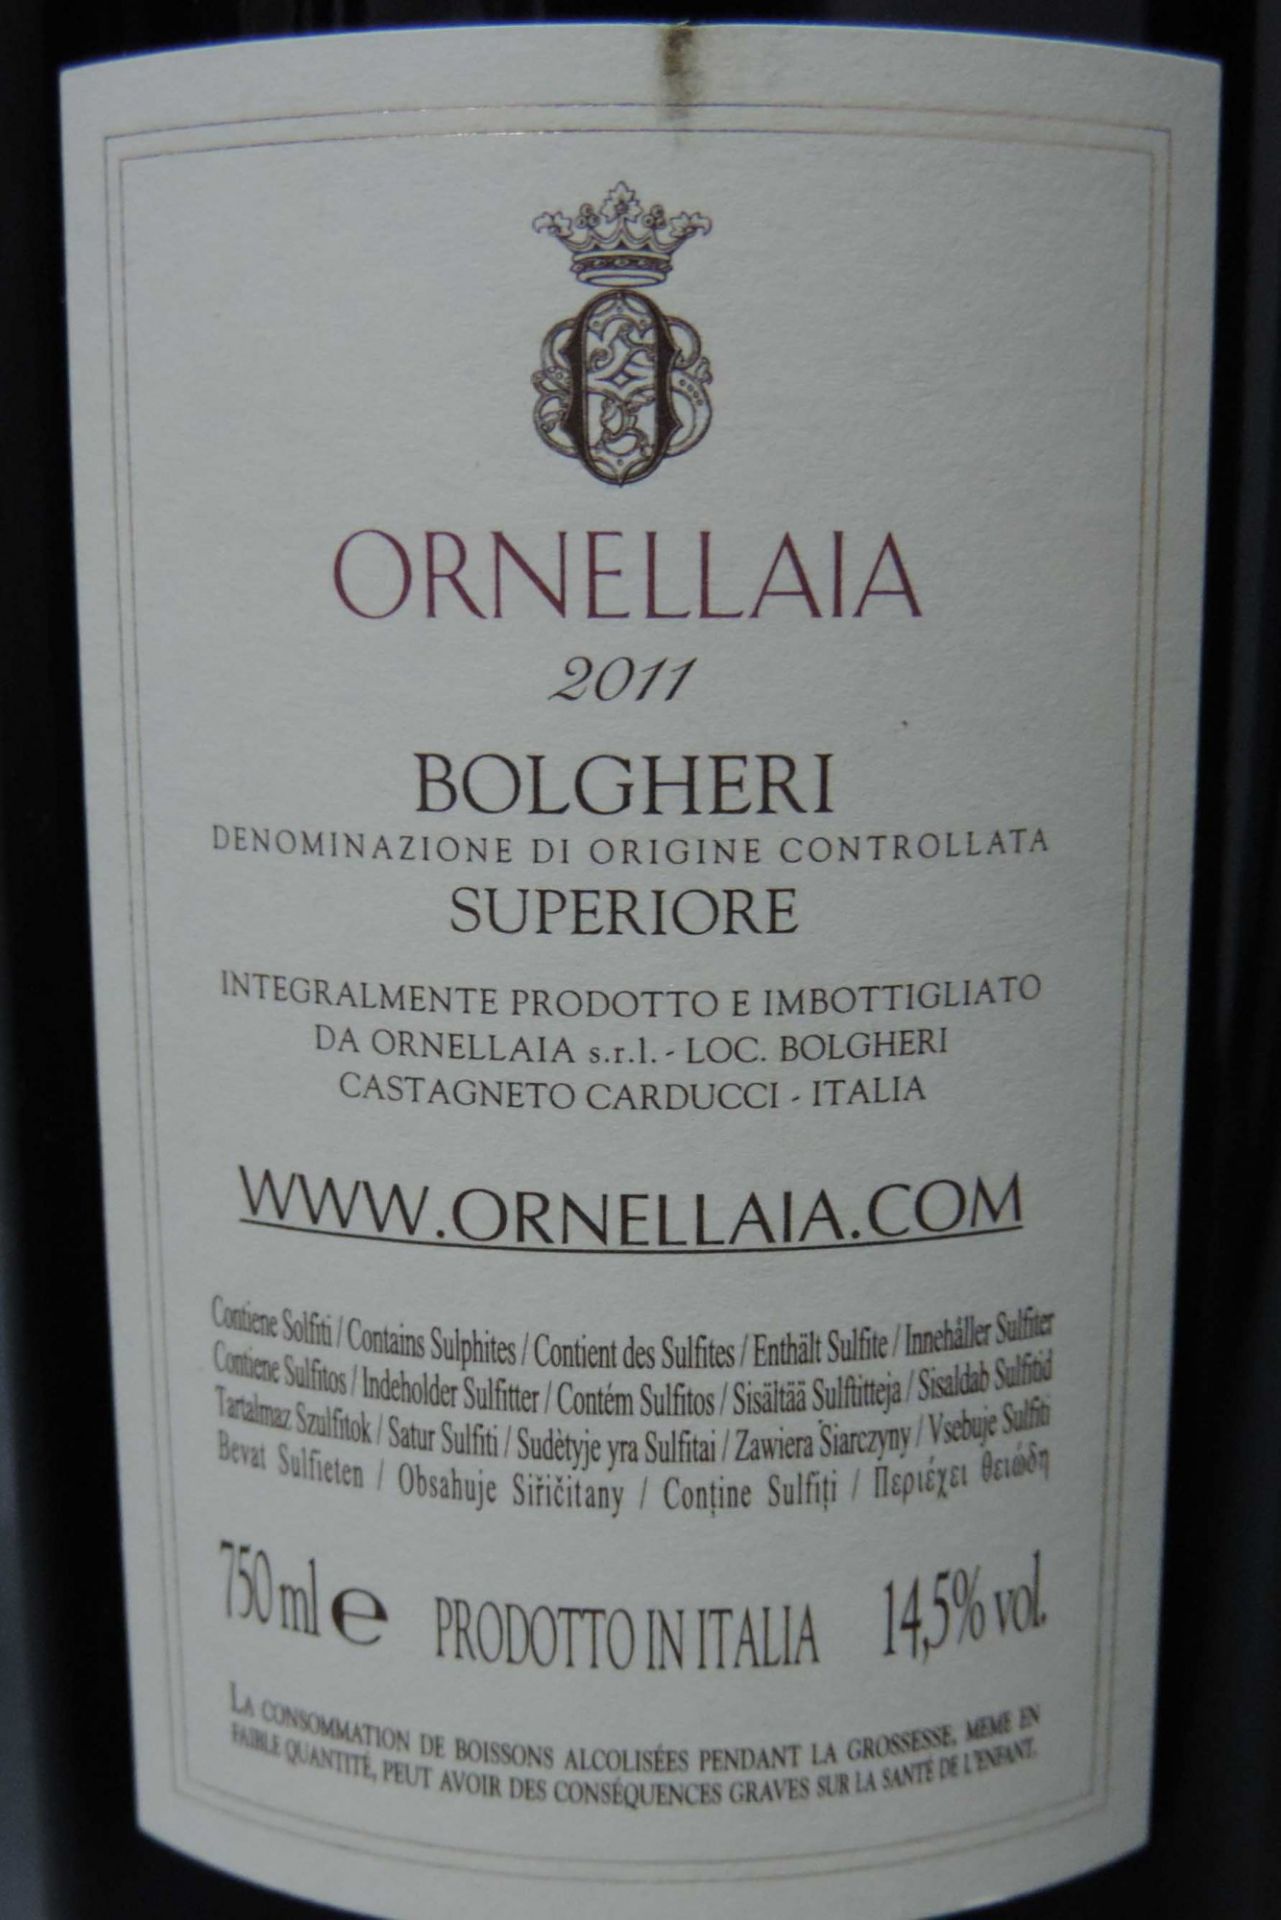 2011 Ornellaia Bolgeri Superiore, Tuscany, 5 Flaschen 750 ml 14,5% vol.Rotwein, Italien.2011 - Bild 5 aus 7